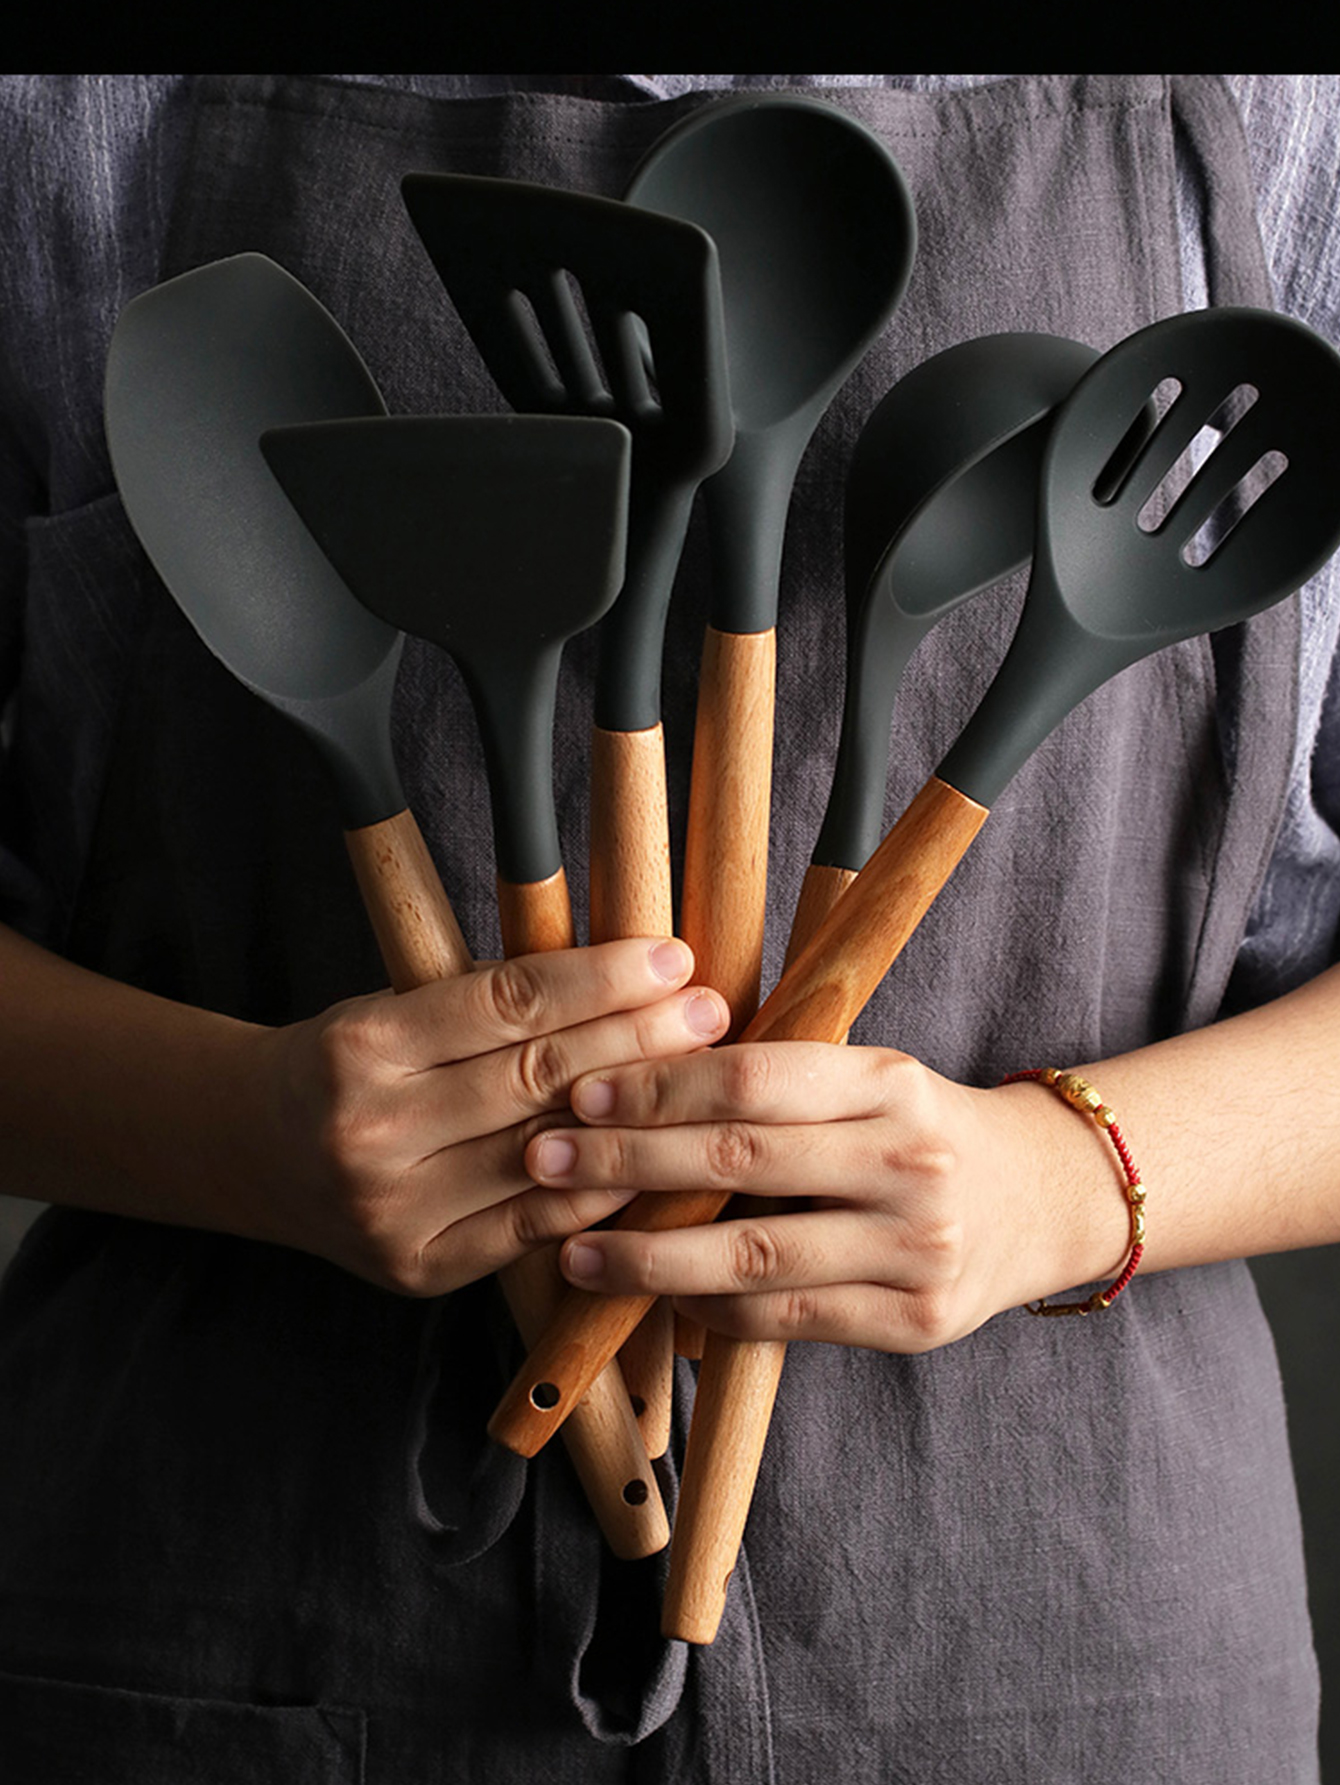 El juego de utensilios de cocina de silicona dará color y alegría a tu  cocina, cucharón, espátula, espumadera, 3 piezas tiene bordes flexibles y  un